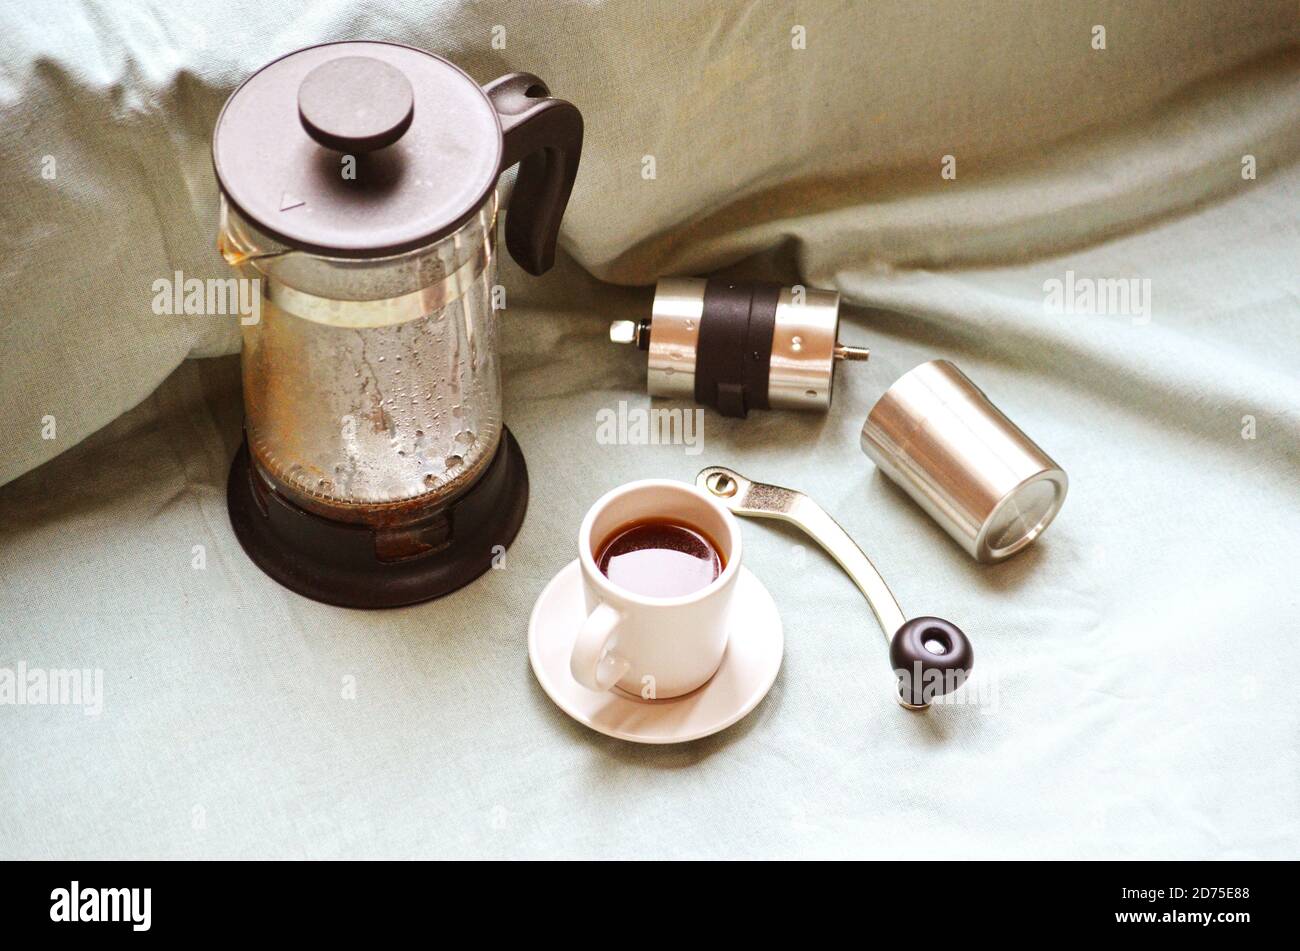 Französische Presse, Kaffeetasse mit dunklem heißem Espresso auf Untertasse und kleine Kaffeemühle aus Metall auf hellgrünem Stofftuch. Stillleben. Herstellung von frischem Coff Stockfoto